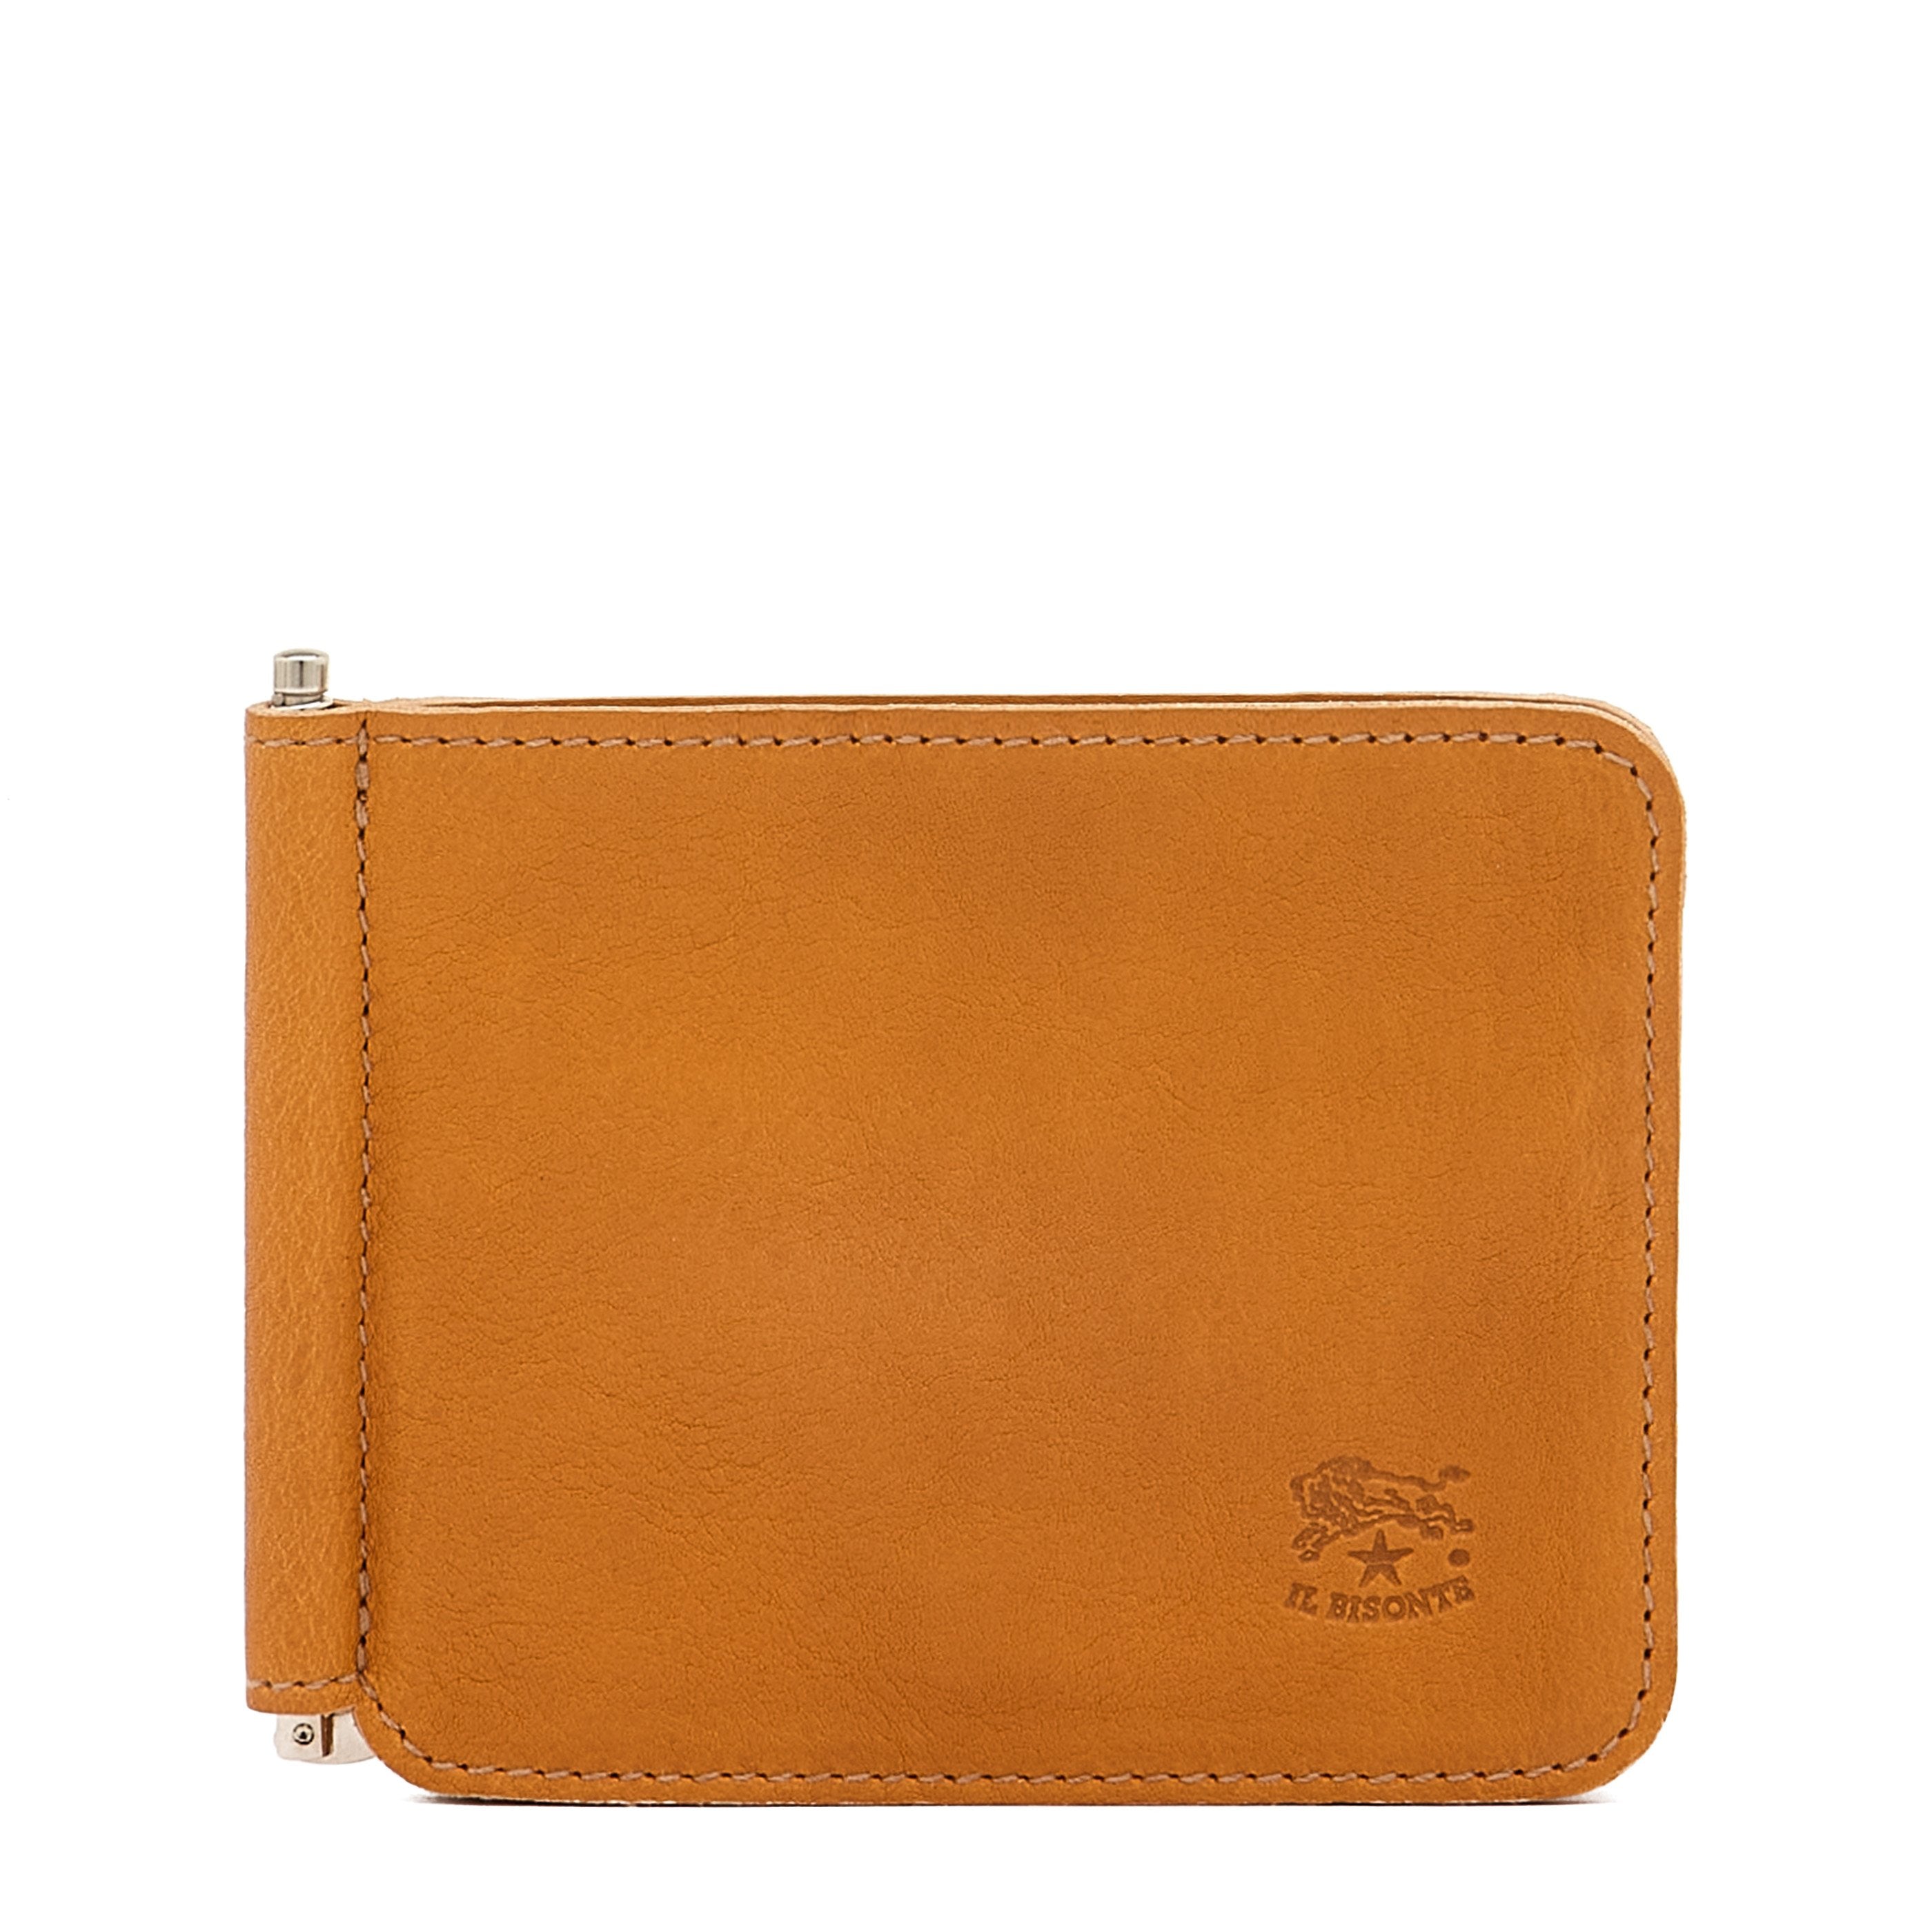 Men's wallet in vintage leather color natural